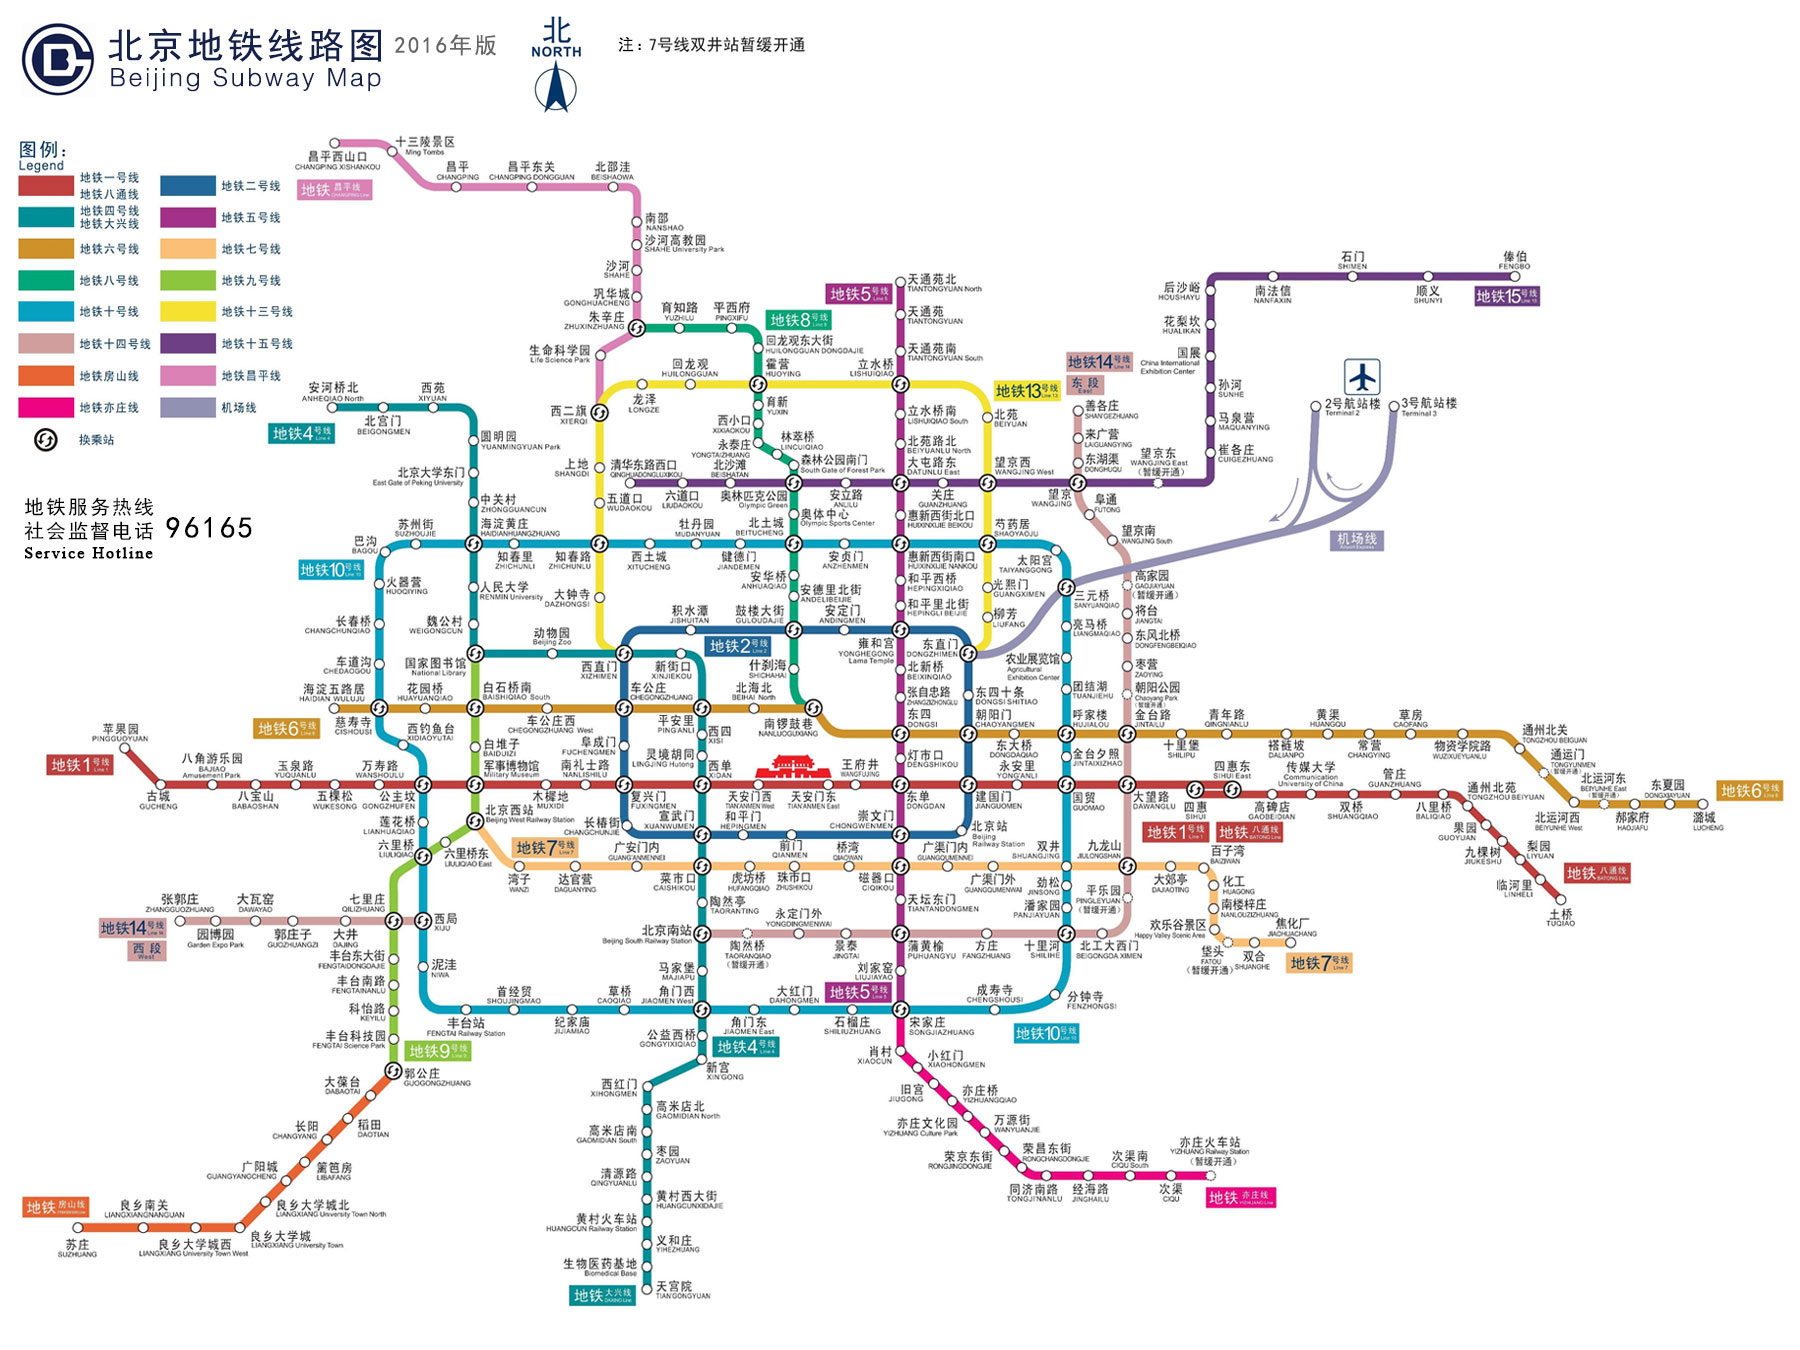 北京地铁运营线路图2016年版发布